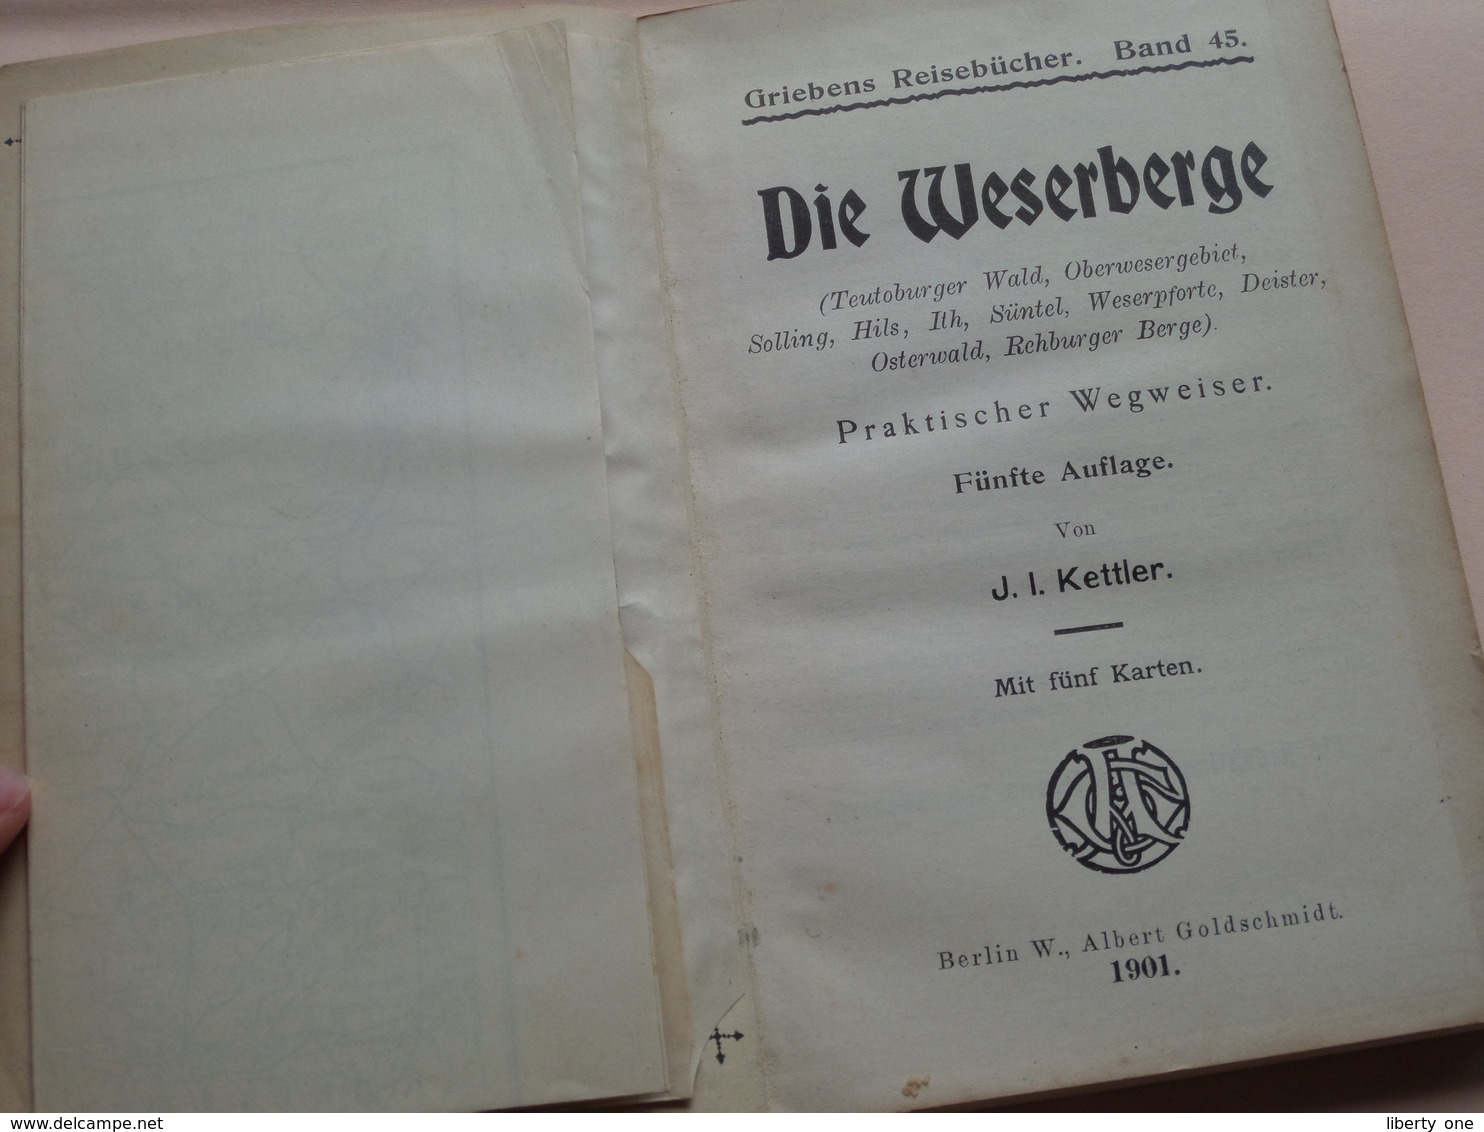 Griebens Reisebücher Band 45 - Die WESERBERGE ( Teutoburger ) Druk. A Seydel ( 168 + Funf Karte ) Auflage Funf - 1901 ! - Rhénanie-du-Nord-Westphalie